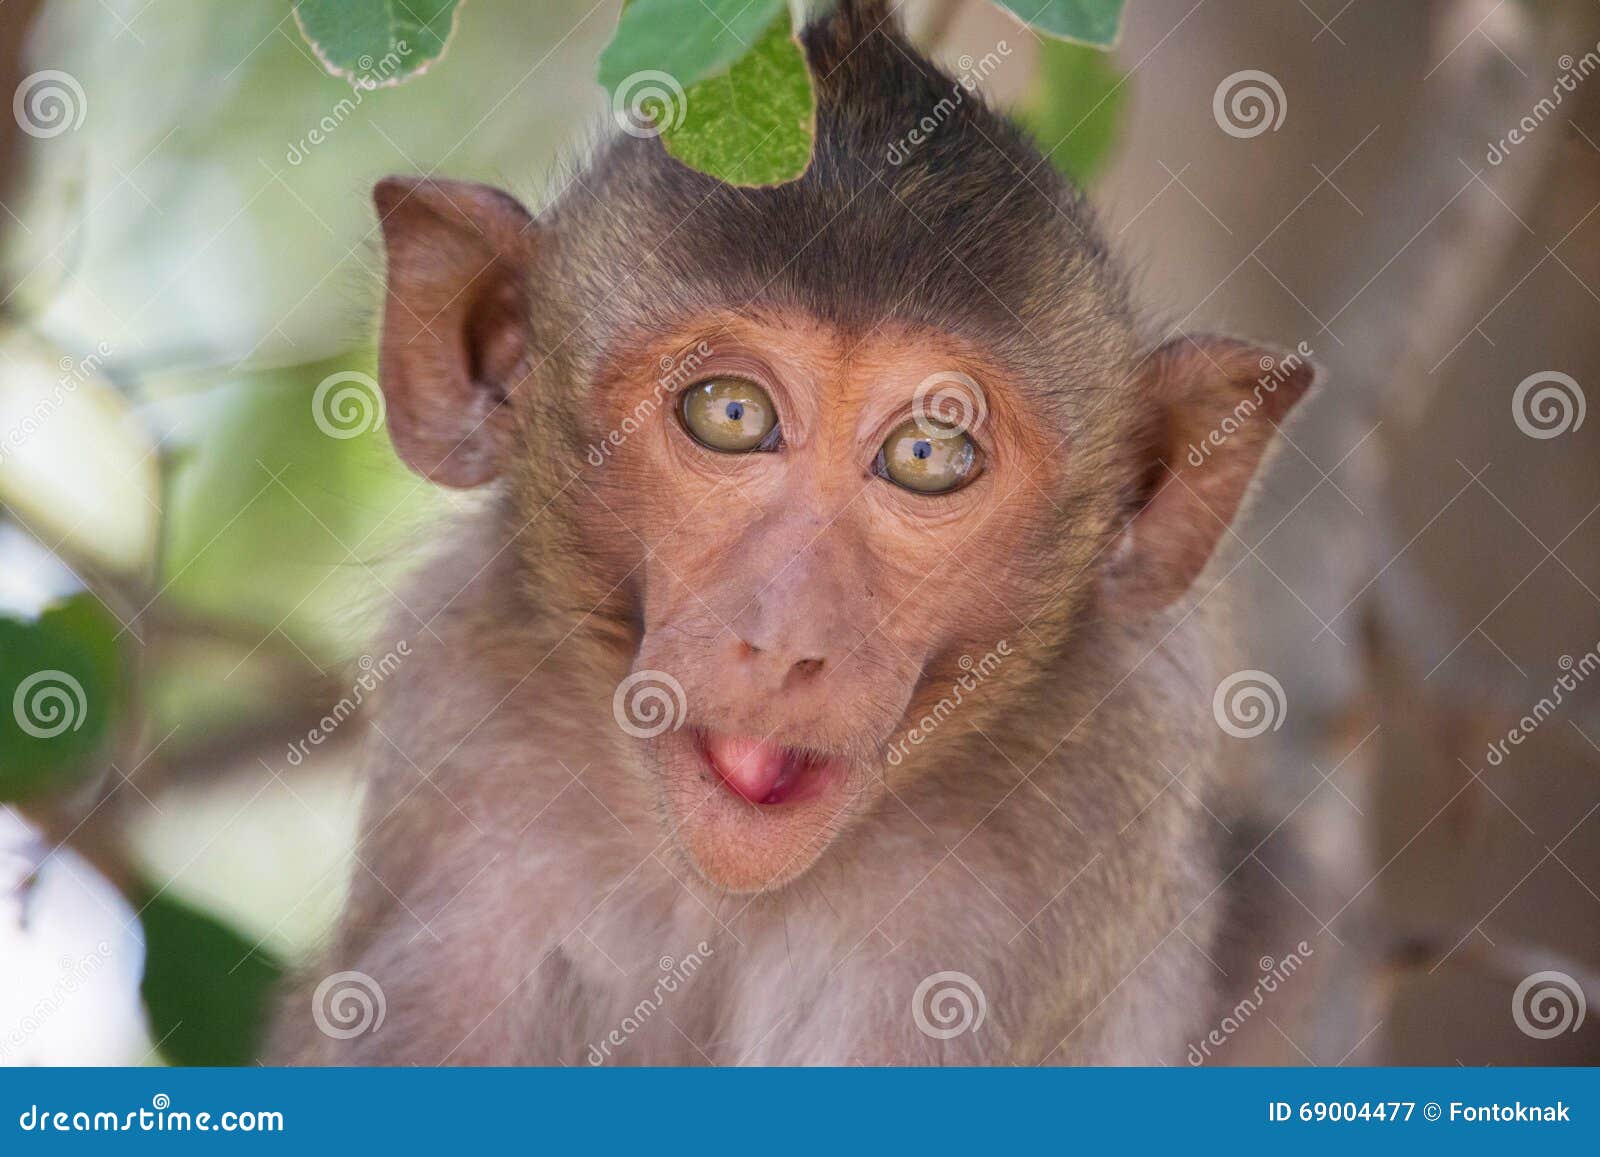 Macacos engraçados imagem de stock. Imagem de comer, quente - 66052971